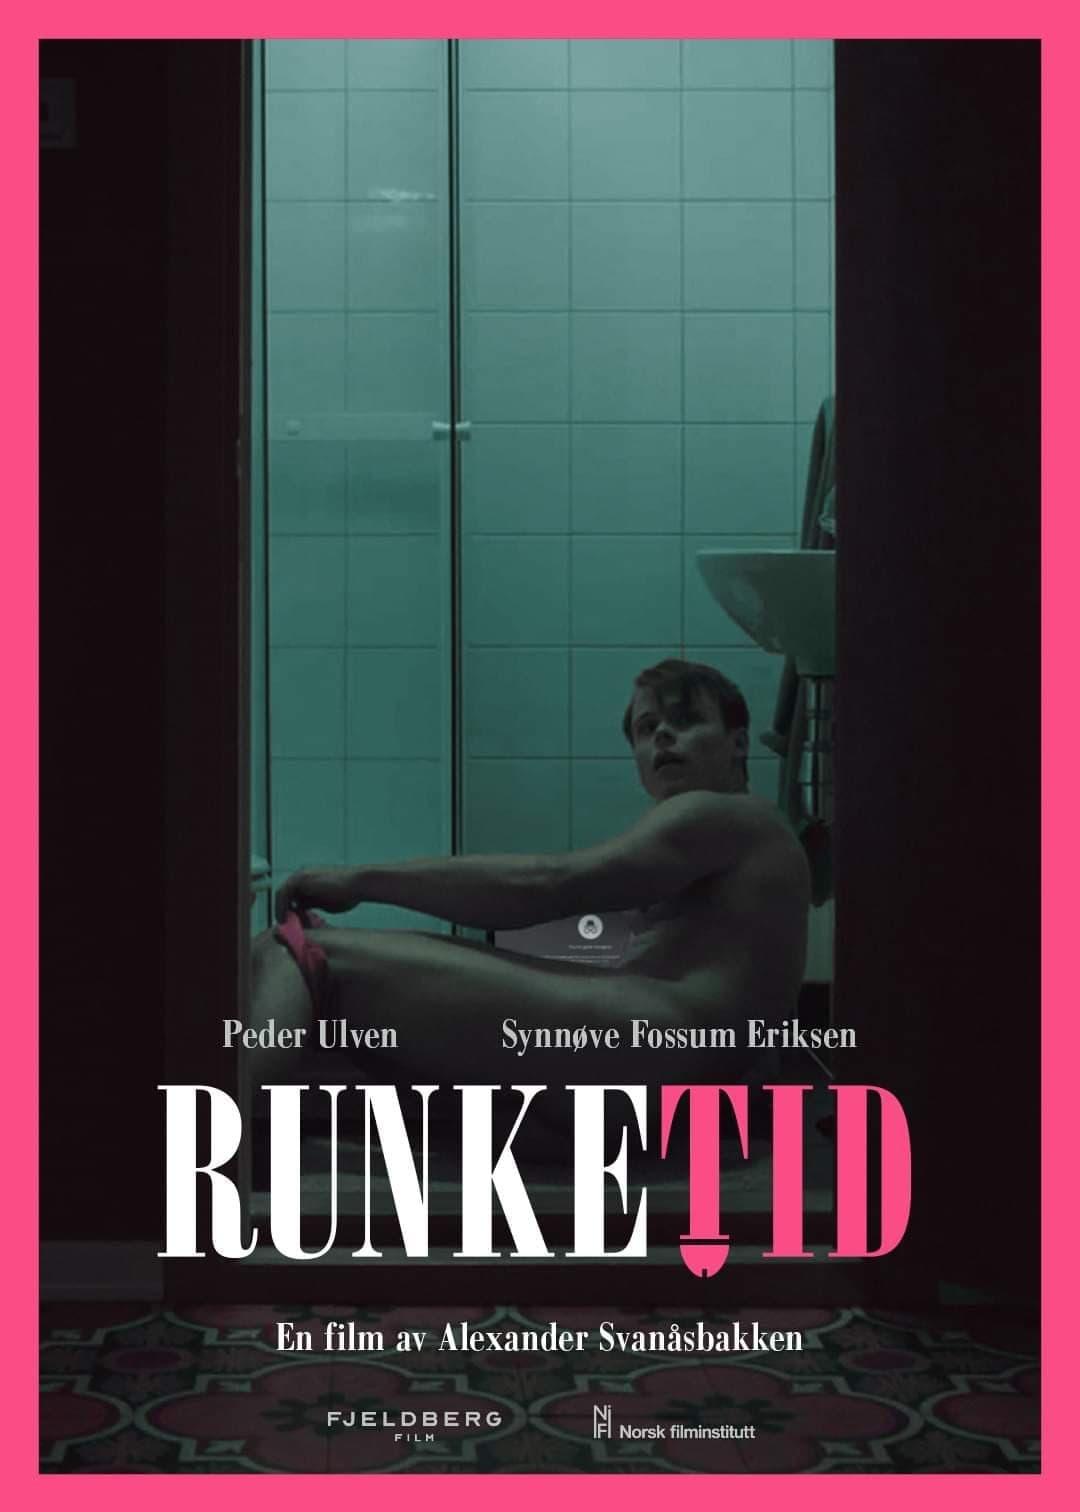 Runketid poster